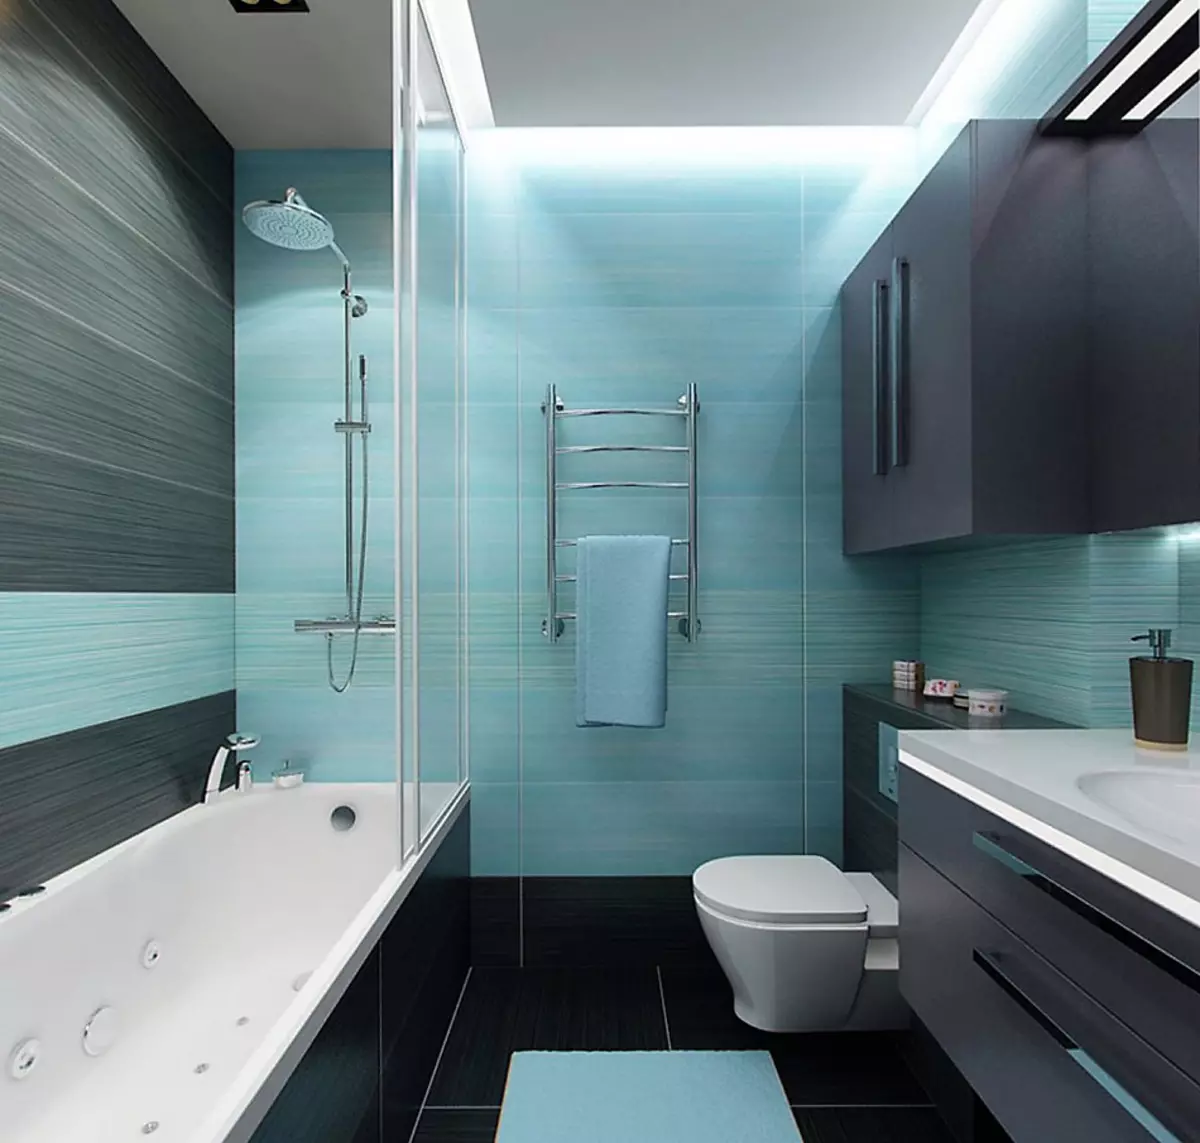 Дизайн маленькой ванной комнаты фото без туалета. Ванная в бирюзовом цвете. Интерьер ванной комнаты с туалетом. Цветовые решения для ванной. Интерьер совмещенной ванной.